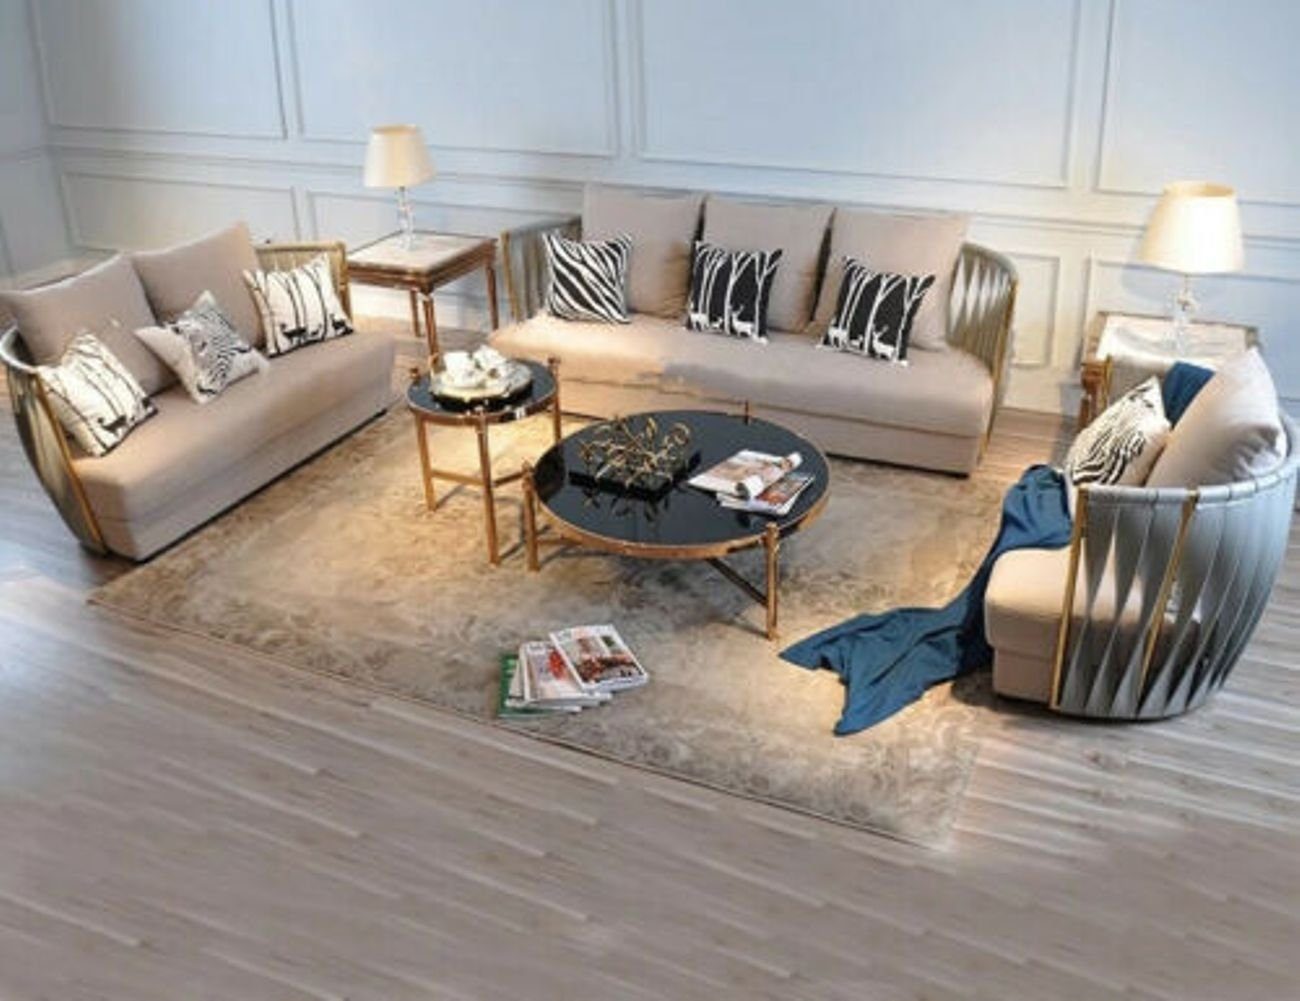 JVmoebel Wohnzimmer-Set, Garnitur Couch Polster Stoff Sofa Couchen Sitz Garnituren 3+2+1 Weiß/Grau